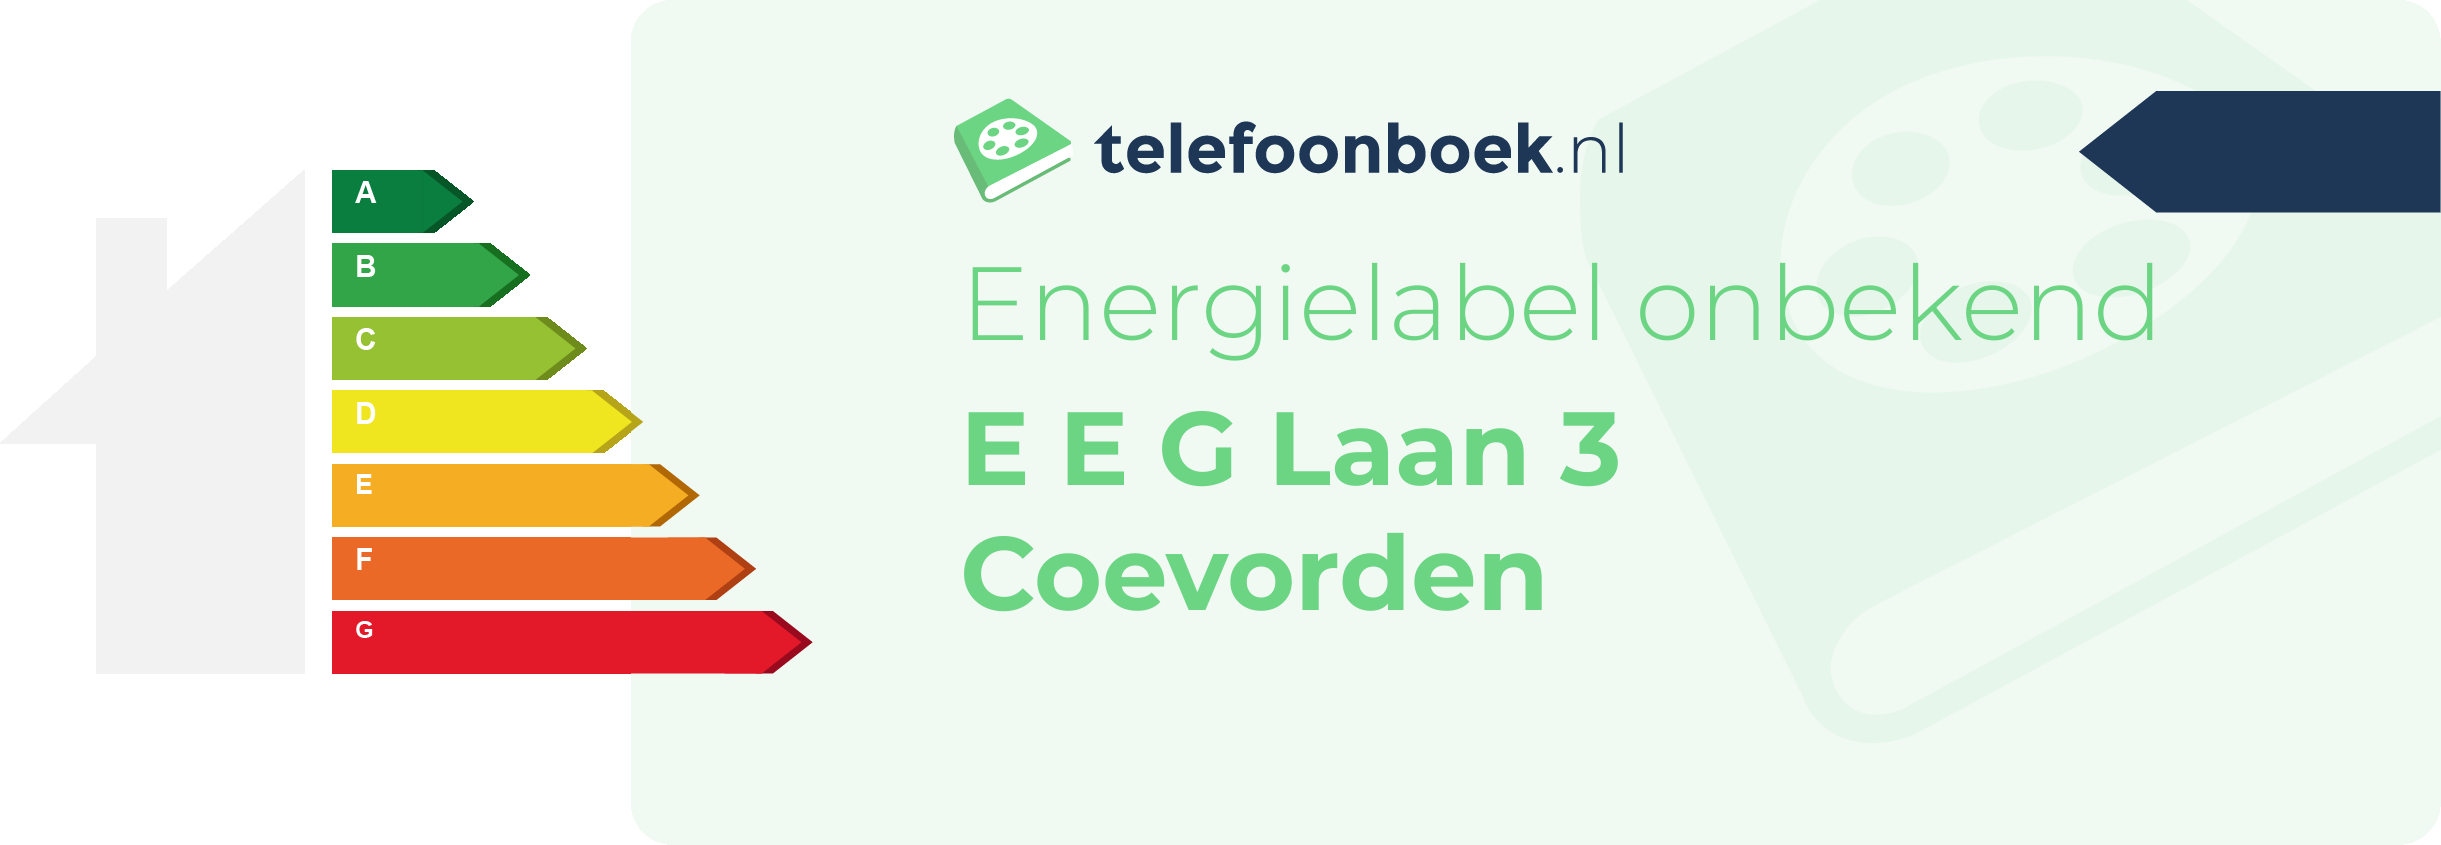 Energielabel E E G Laan 3 Coevorden